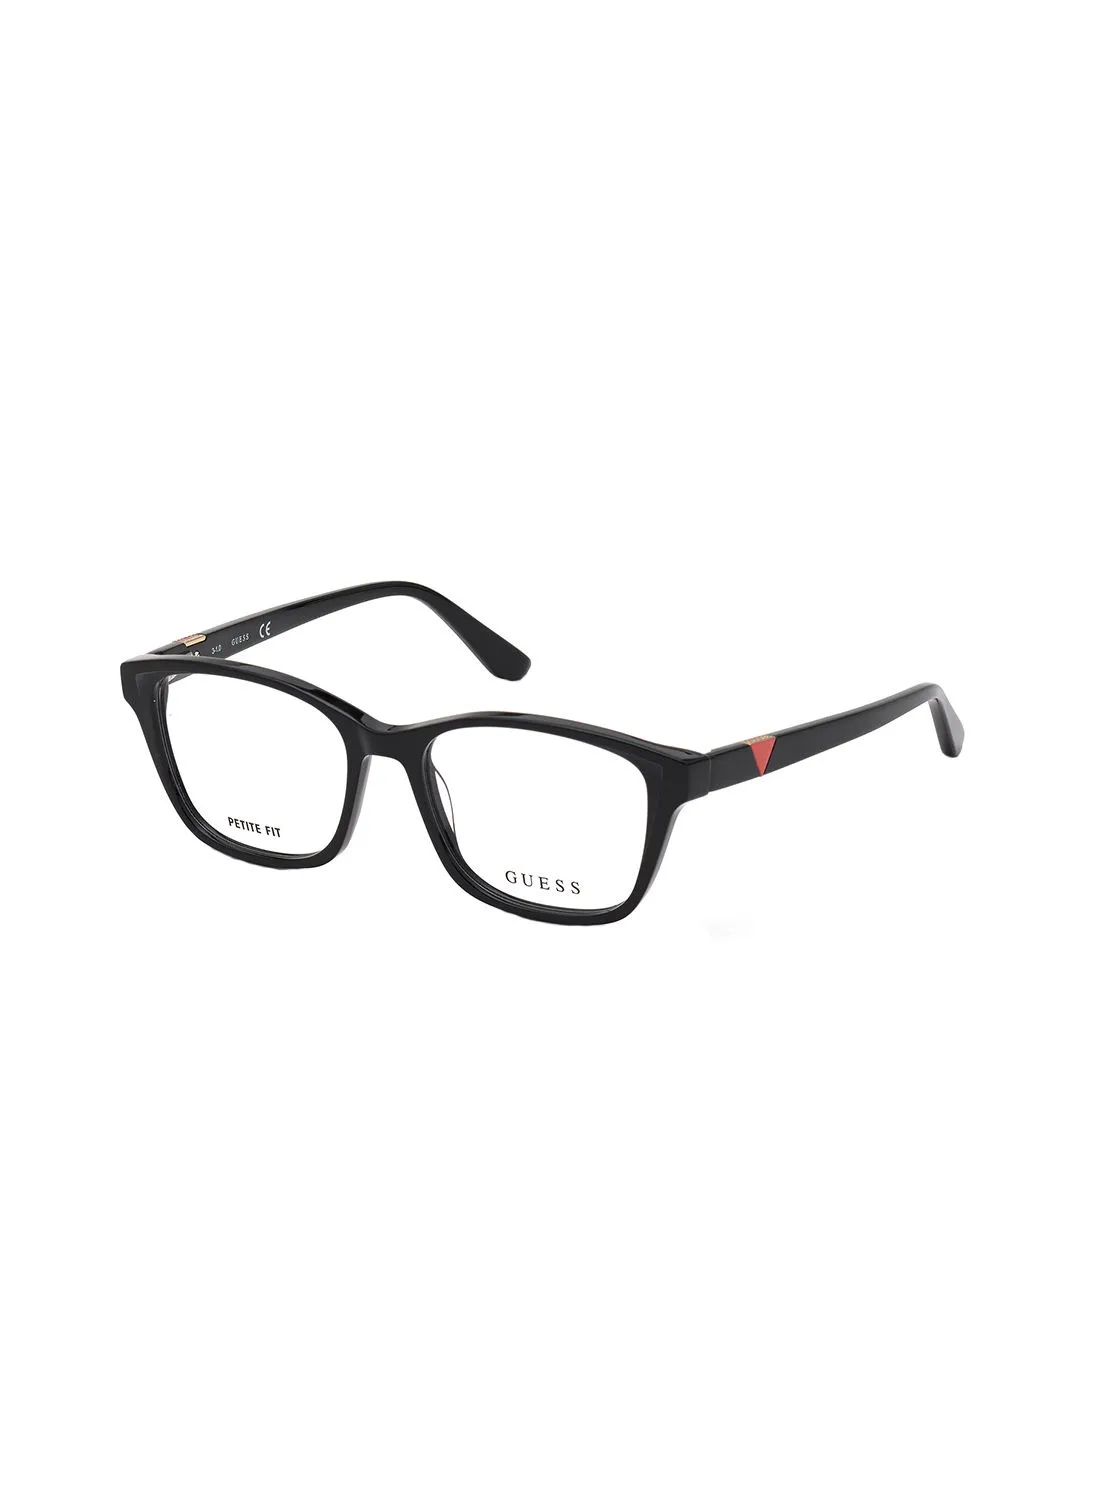 GUESS Square Eyewear Optical Frame GU281000154